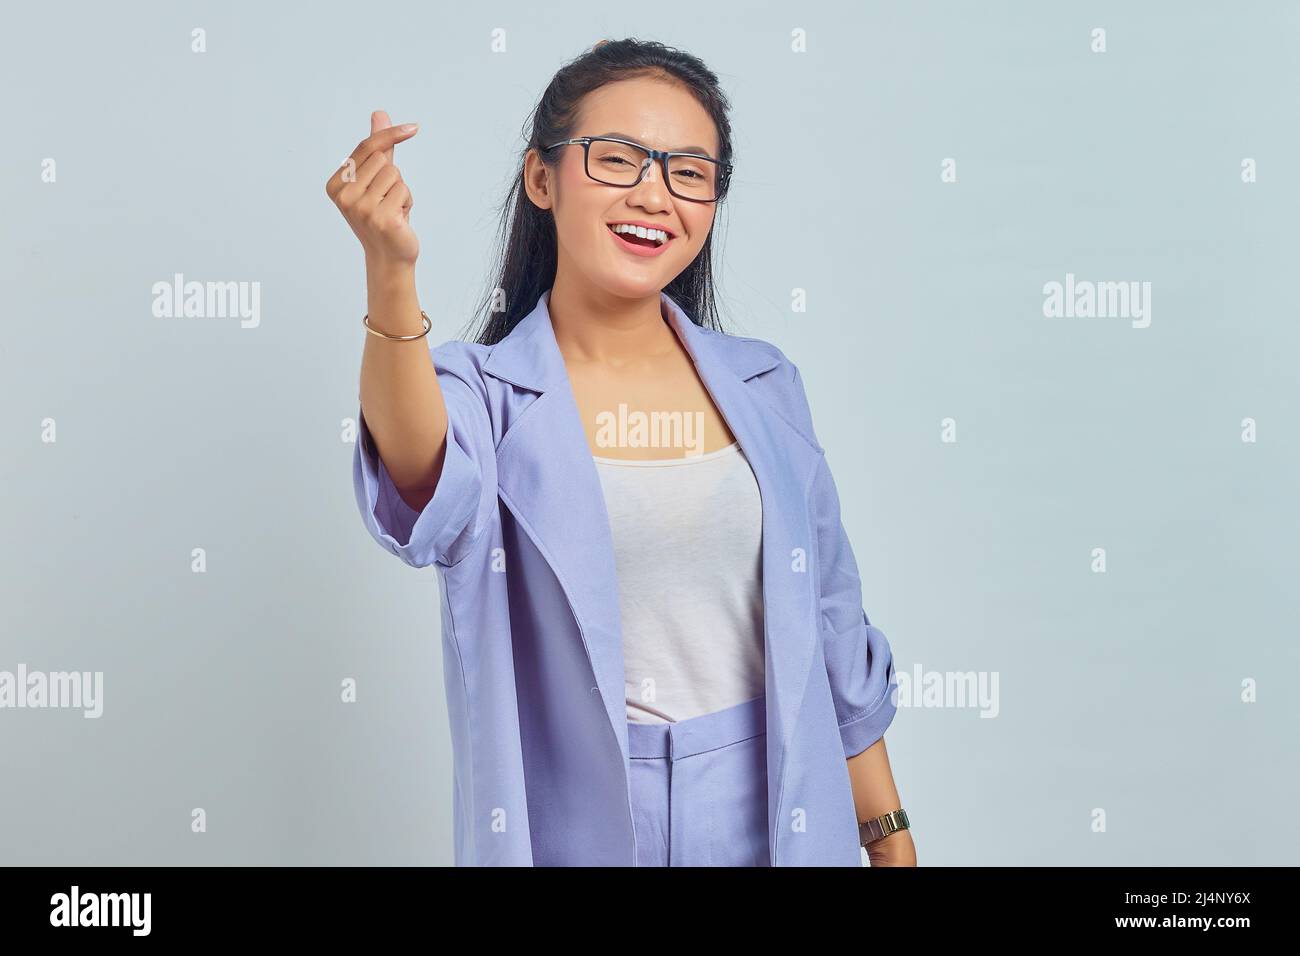 Portrait d'une jeune femme asiatique souriante montrant le cœur coréen avec deux doigts croisés, exprimer la joie et la positivité isolées sur fond blanc Banque D'Images